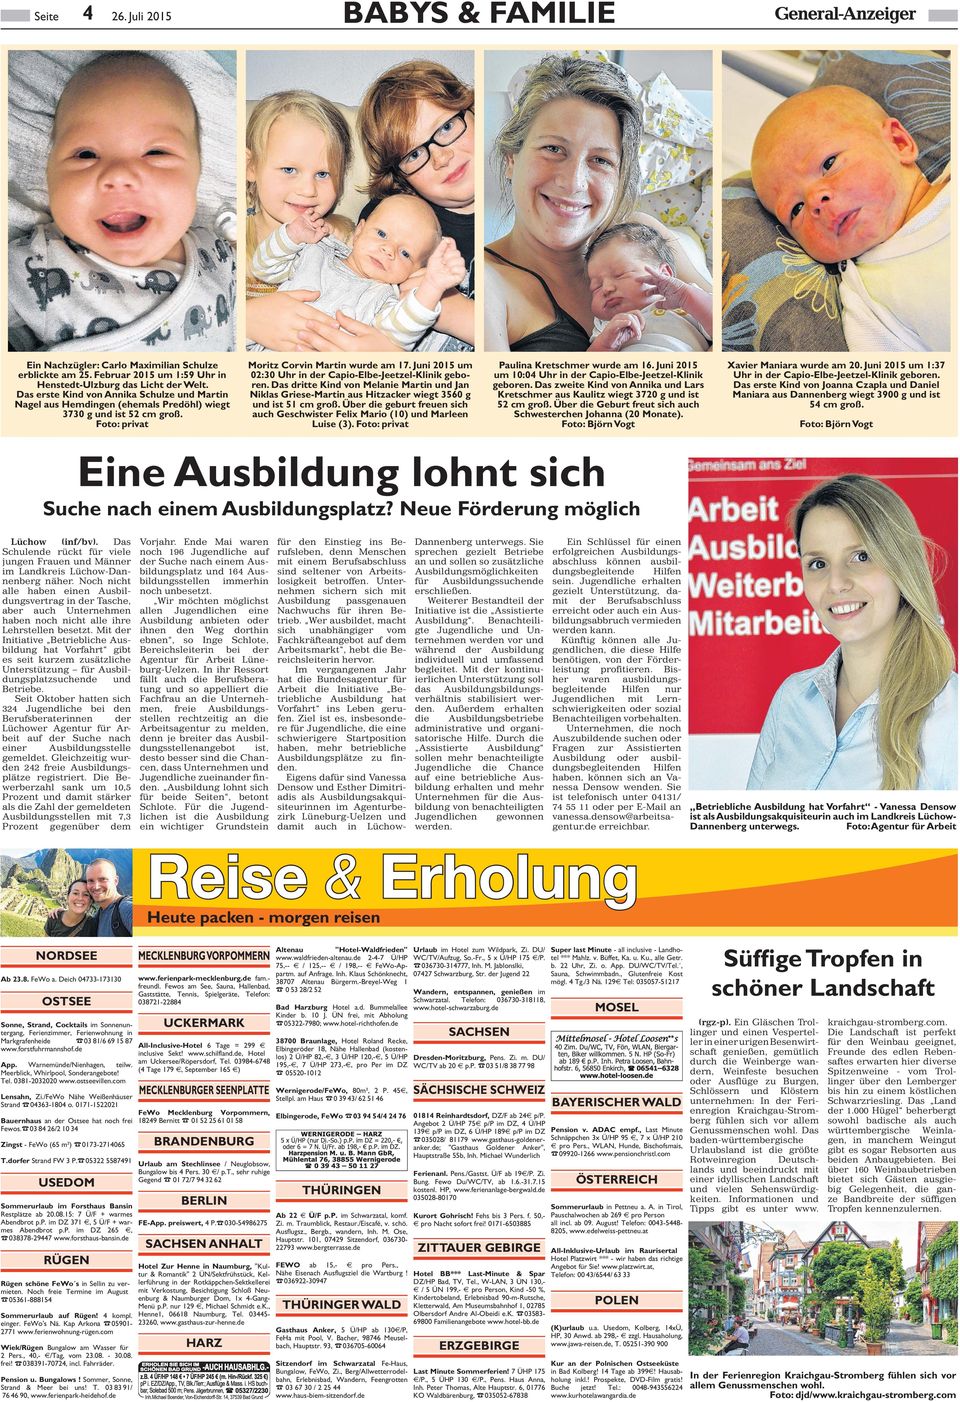 Juni 2015 um 02:30 Uhr in der Capio-Elbe-Jeetzel-Klinik geboren. Das dritte Kind von Melanie Martin und Jan Niklas Griese-Martin aus Hitzacker wiegt 3560 g und ist 51 cm groß.